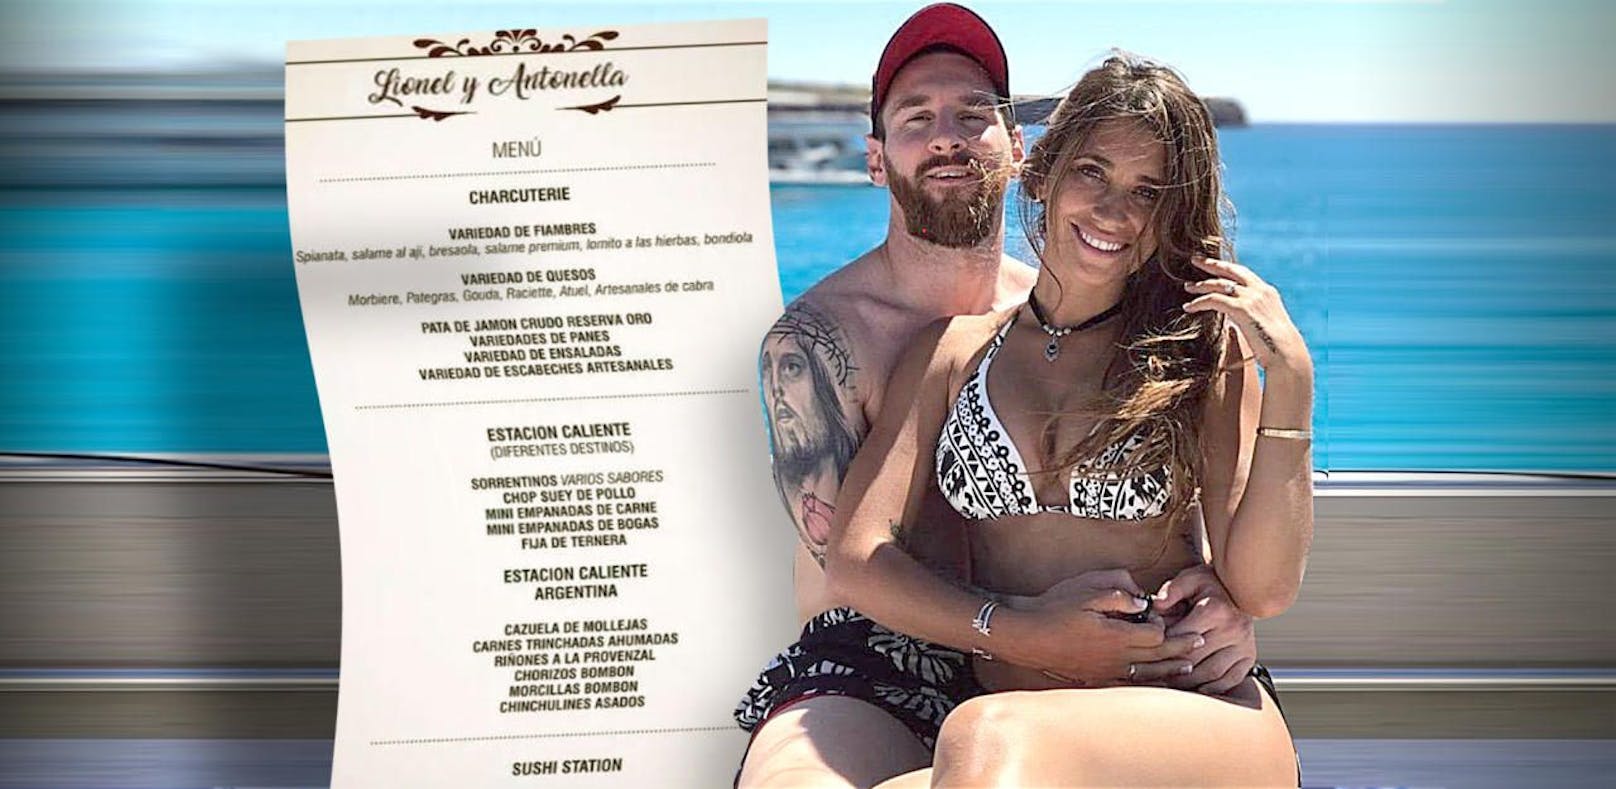 Lionel Messi und seine Antonella laden am Freitag zu ihrer Hochzeit. Dabei wird das Traumpaar seine Gäste mit allerlei kulinarischen Köstlichkeiten verwöhnen. 